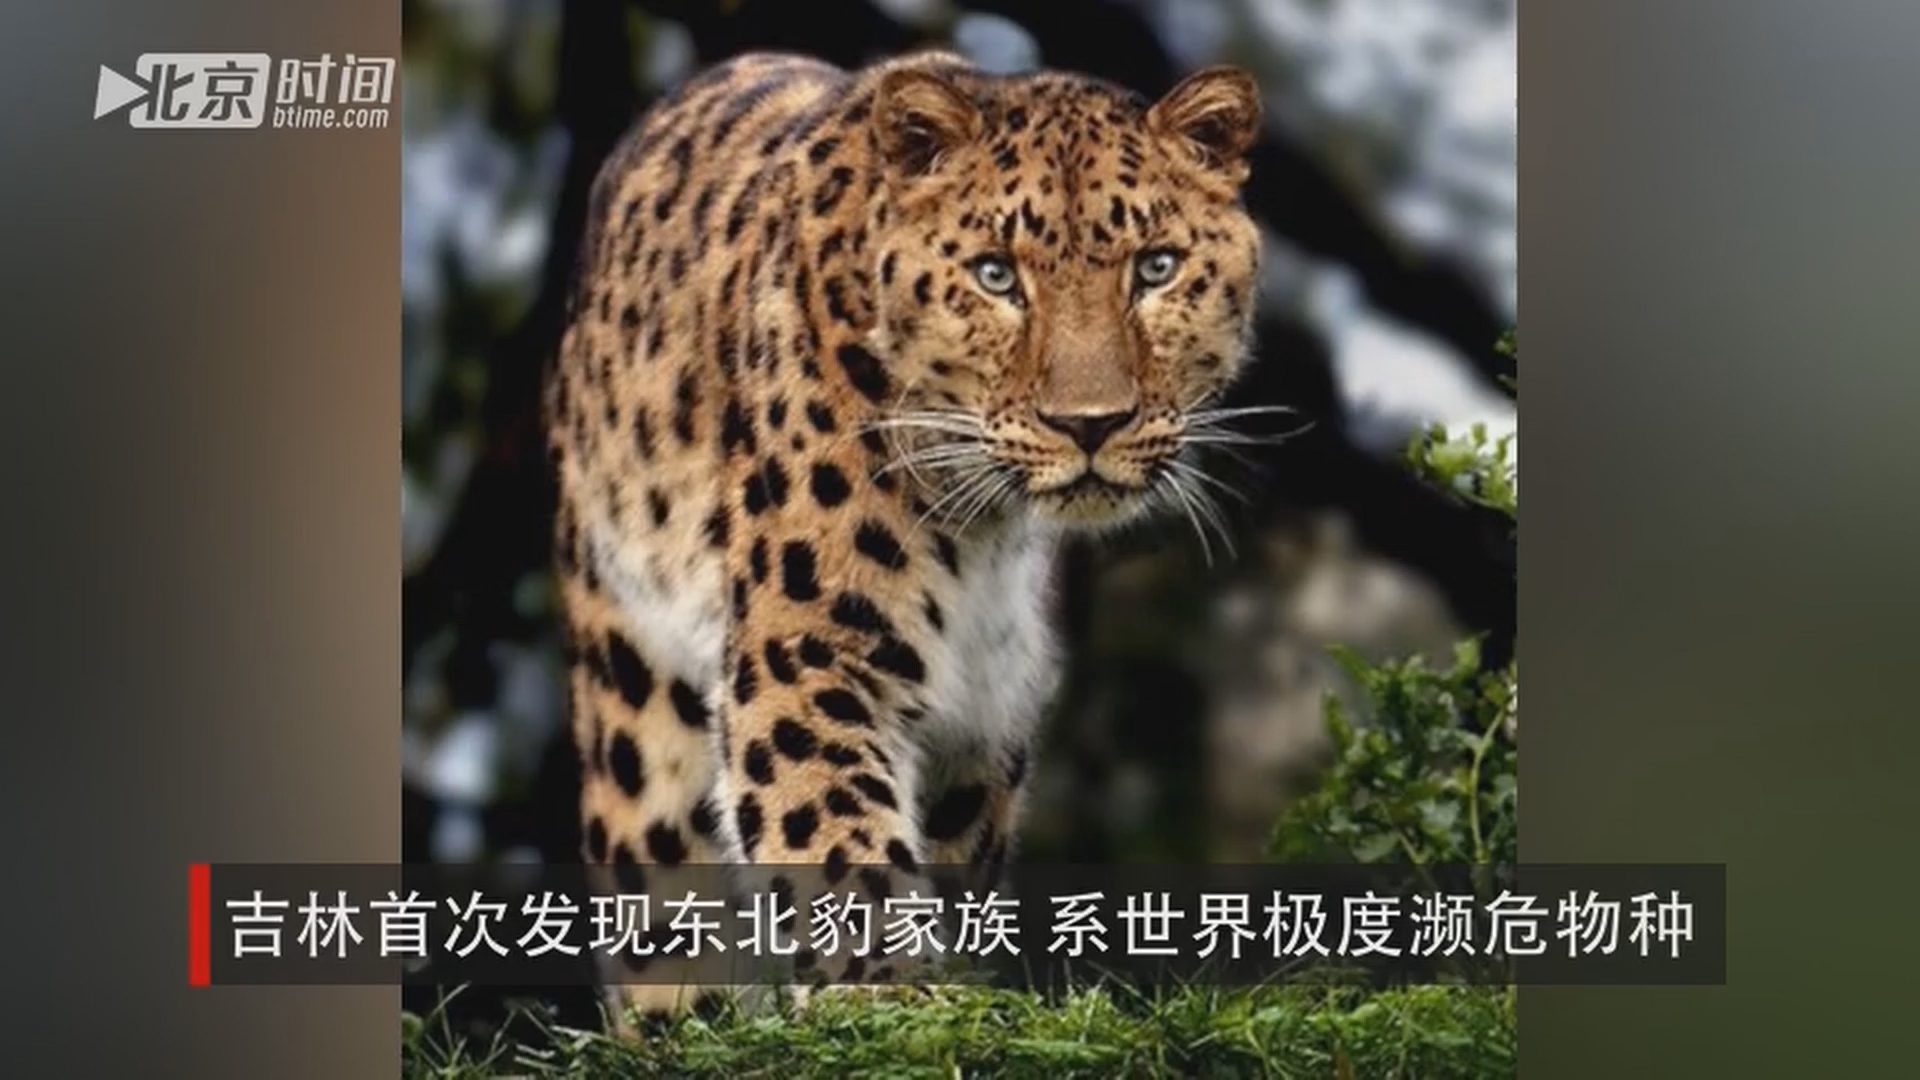 吉林首次发现东北豹家族 系世界极度濒危物种